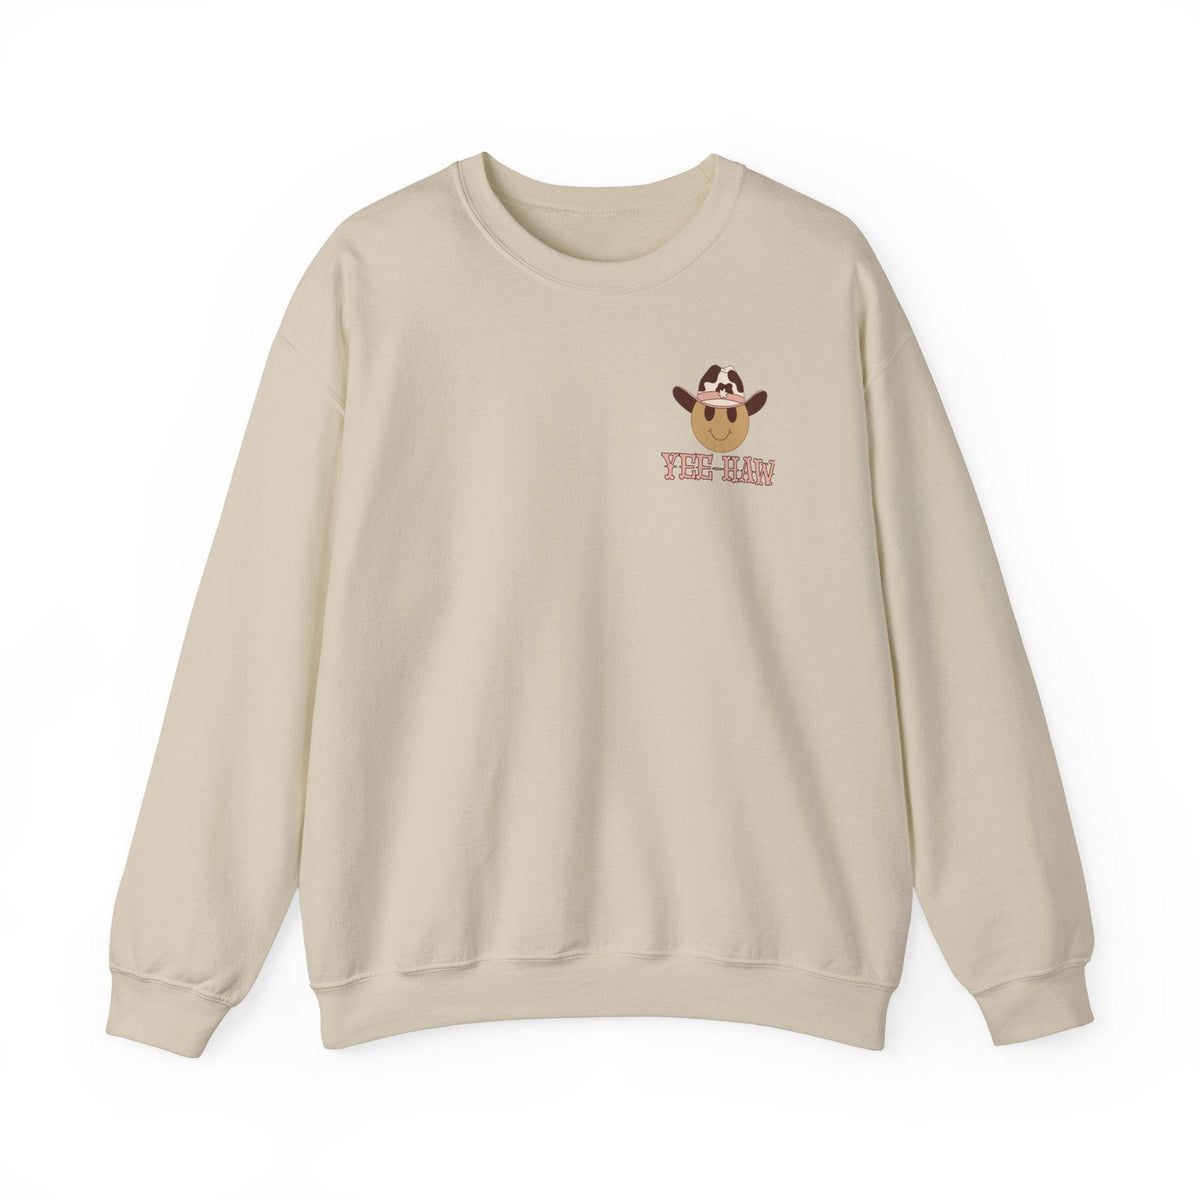 Yeehaw Emoji Sweatshirt | Western Sweatshirt Sweatshirt TheFringeCultureCollective